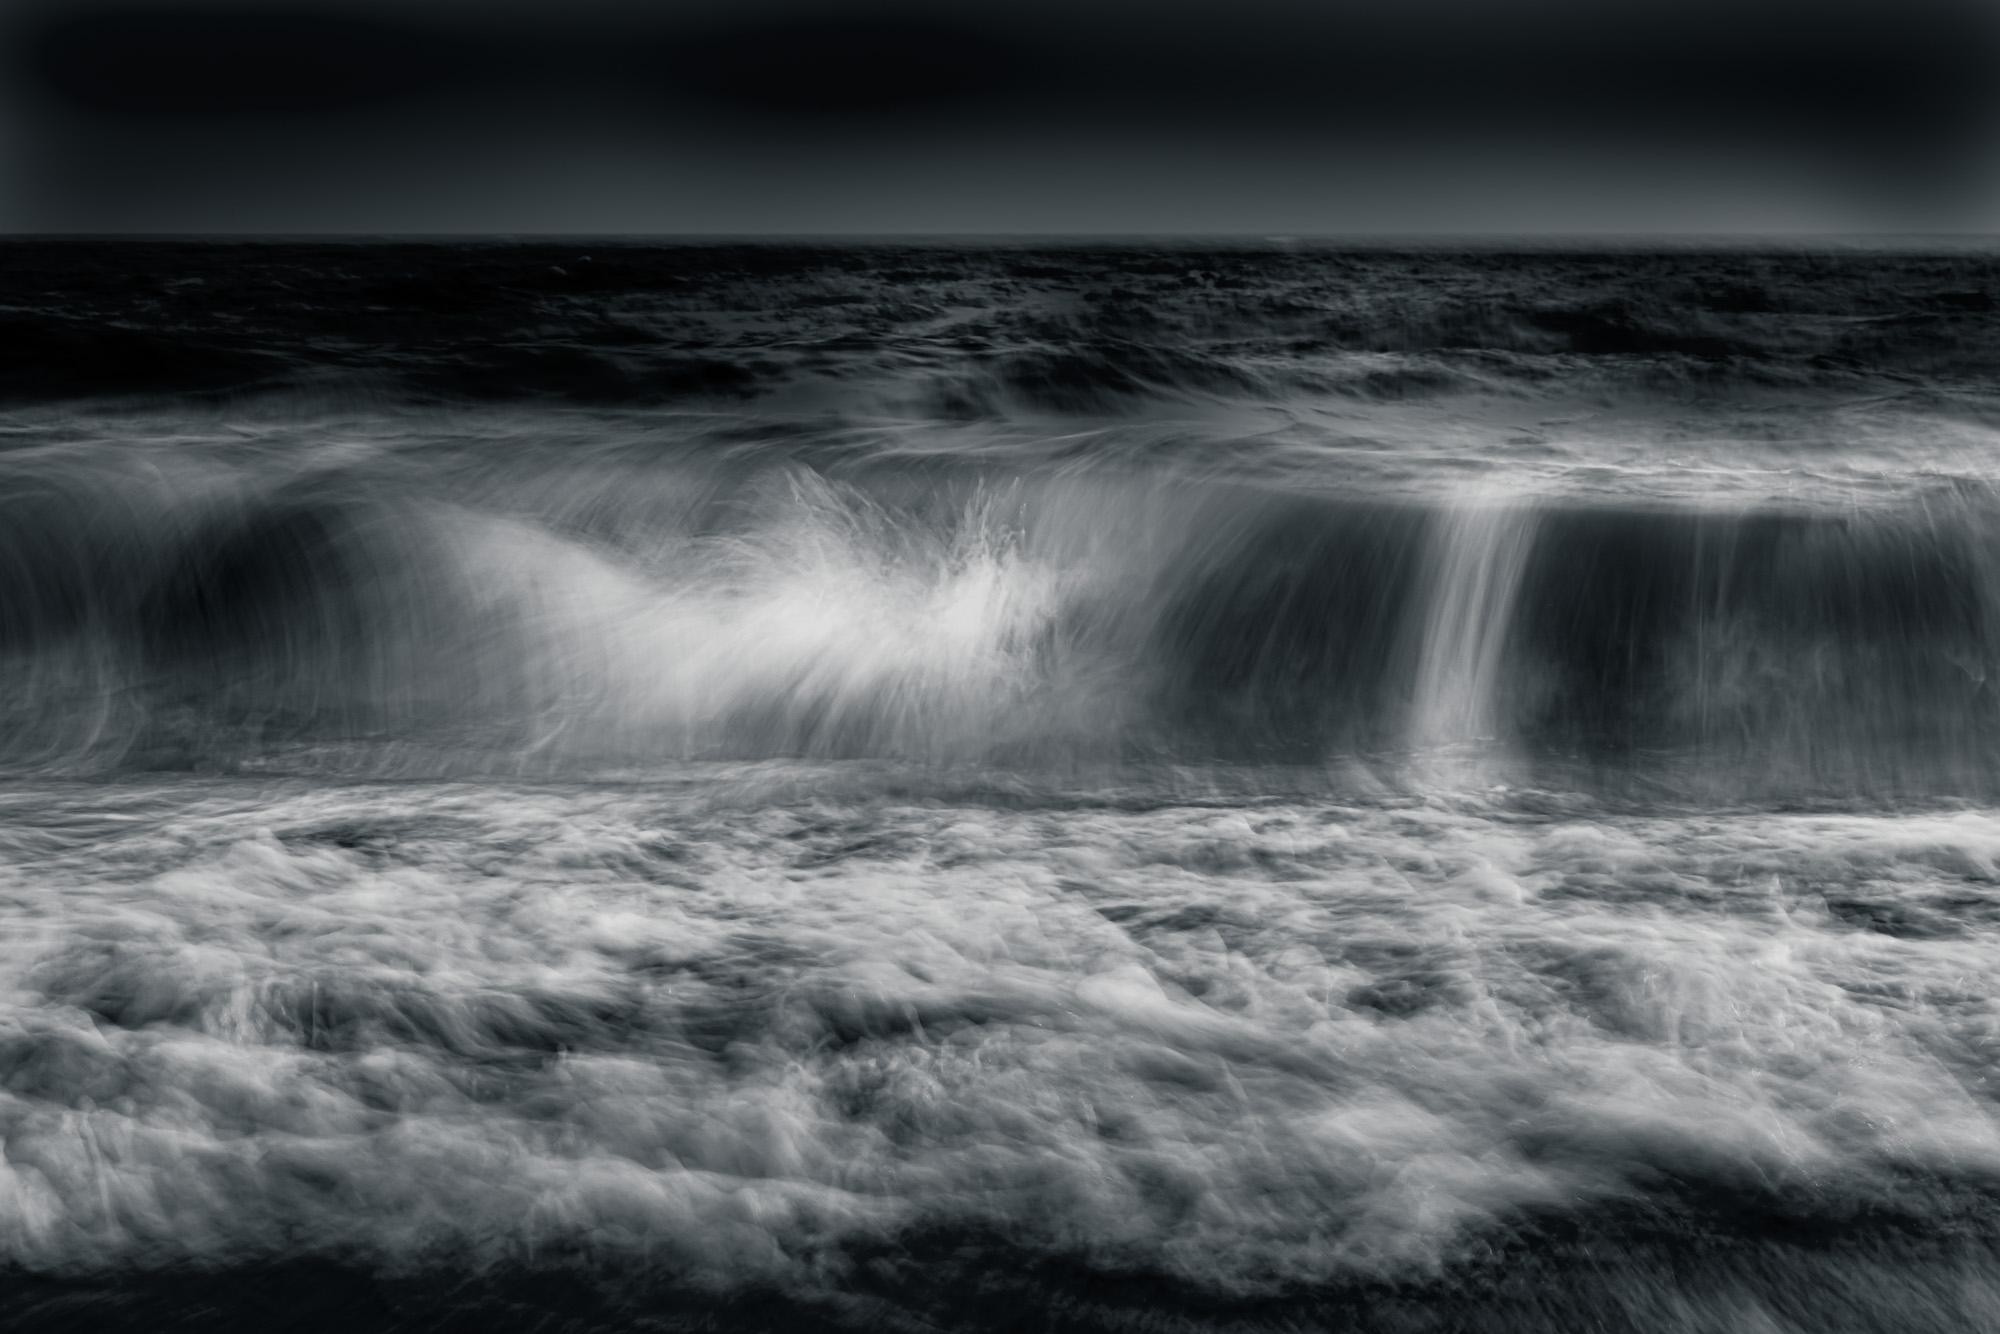 Landscape Photograph Howard Lewis - Photographie en noir et blanc en édition limitée Océan, eau, vagues, Sans titre n°54